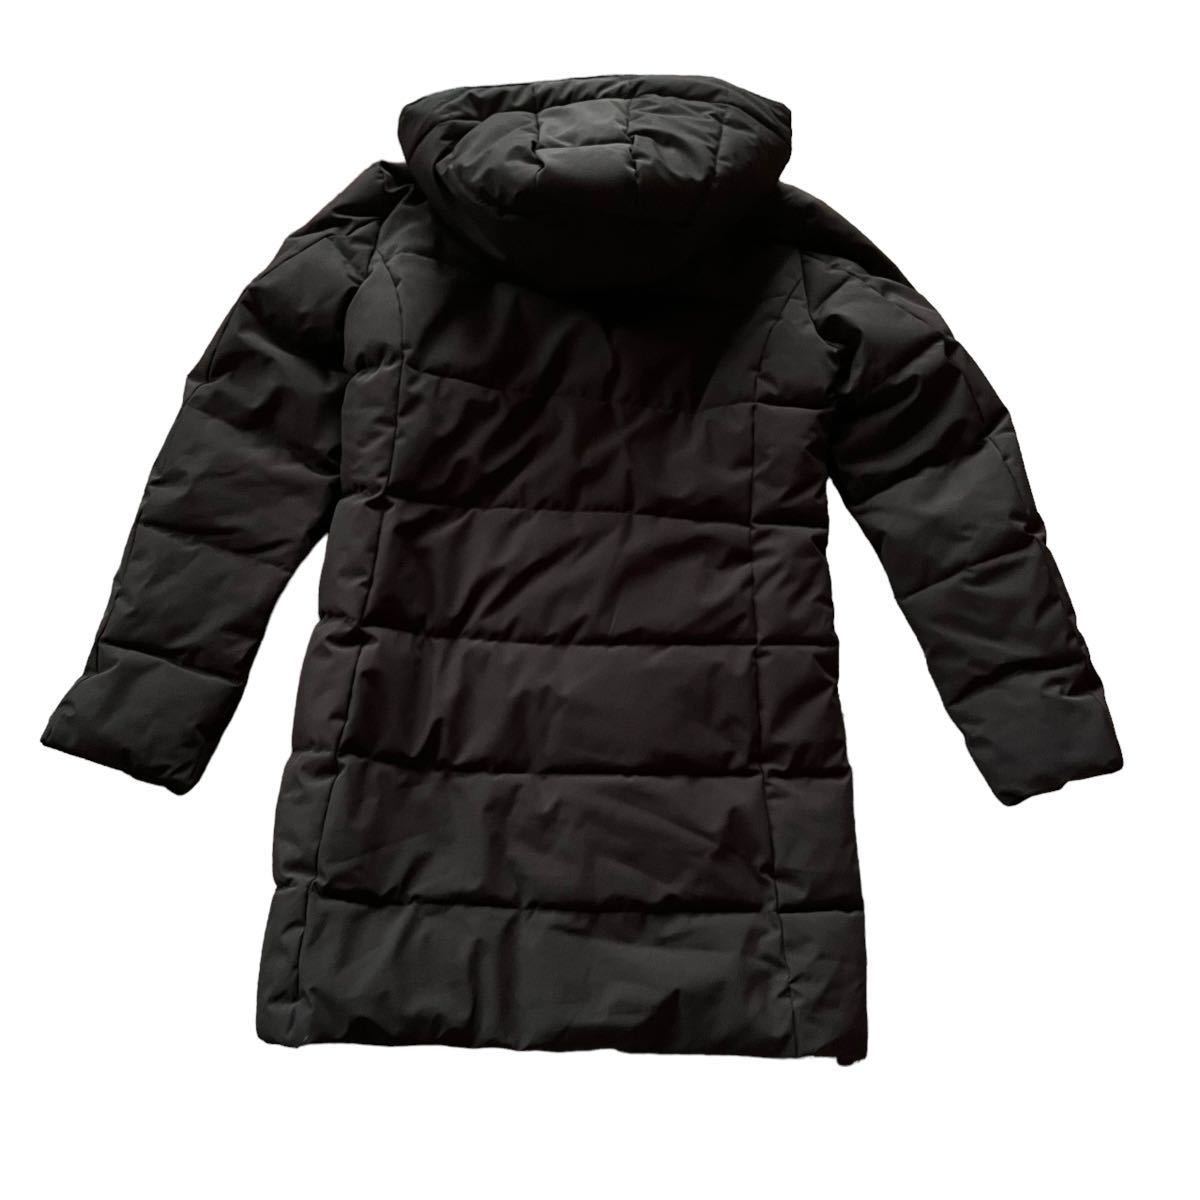 OUTDOOR PRODUCTS уличный Pro datsuk с хлопком жакет пальто чёрный женский M размер [AY1580]